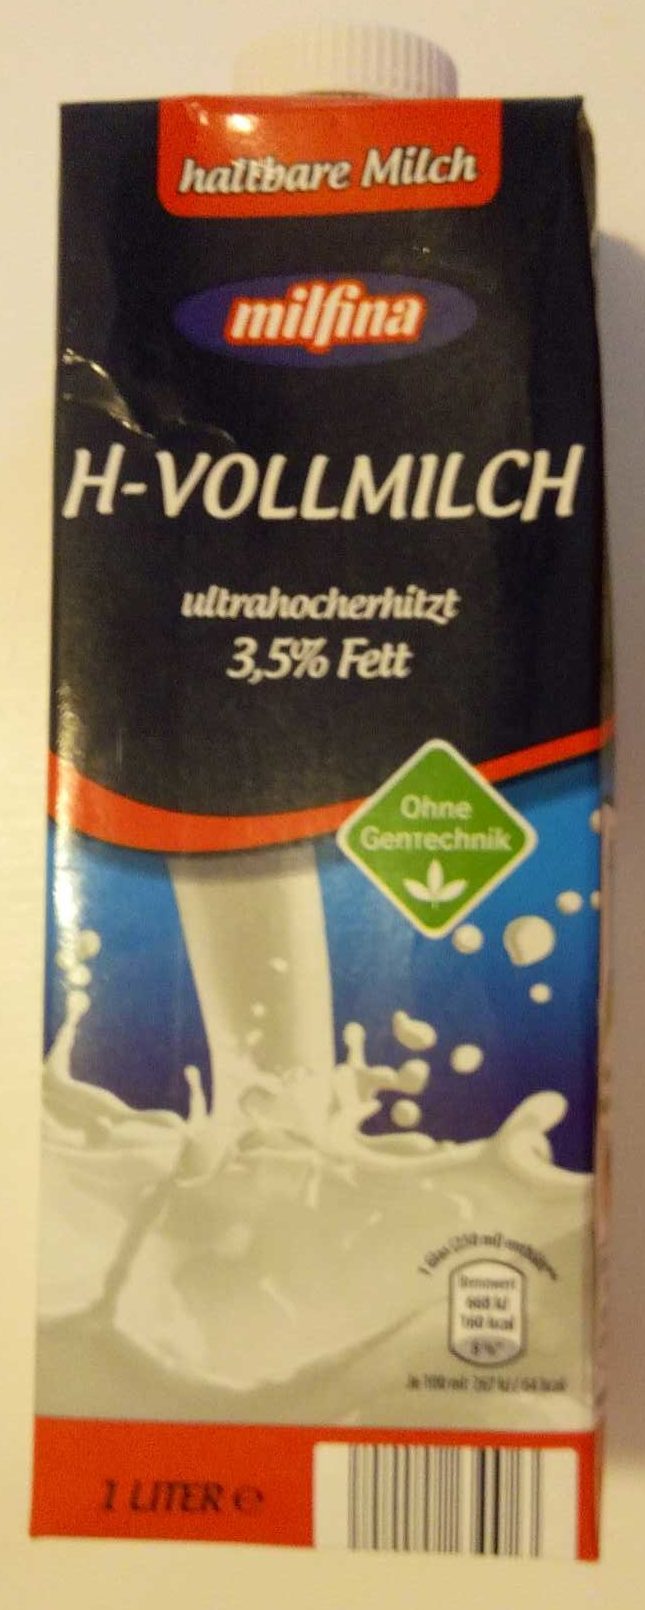 H-Vollmilch 3,5% - Prodotto - de